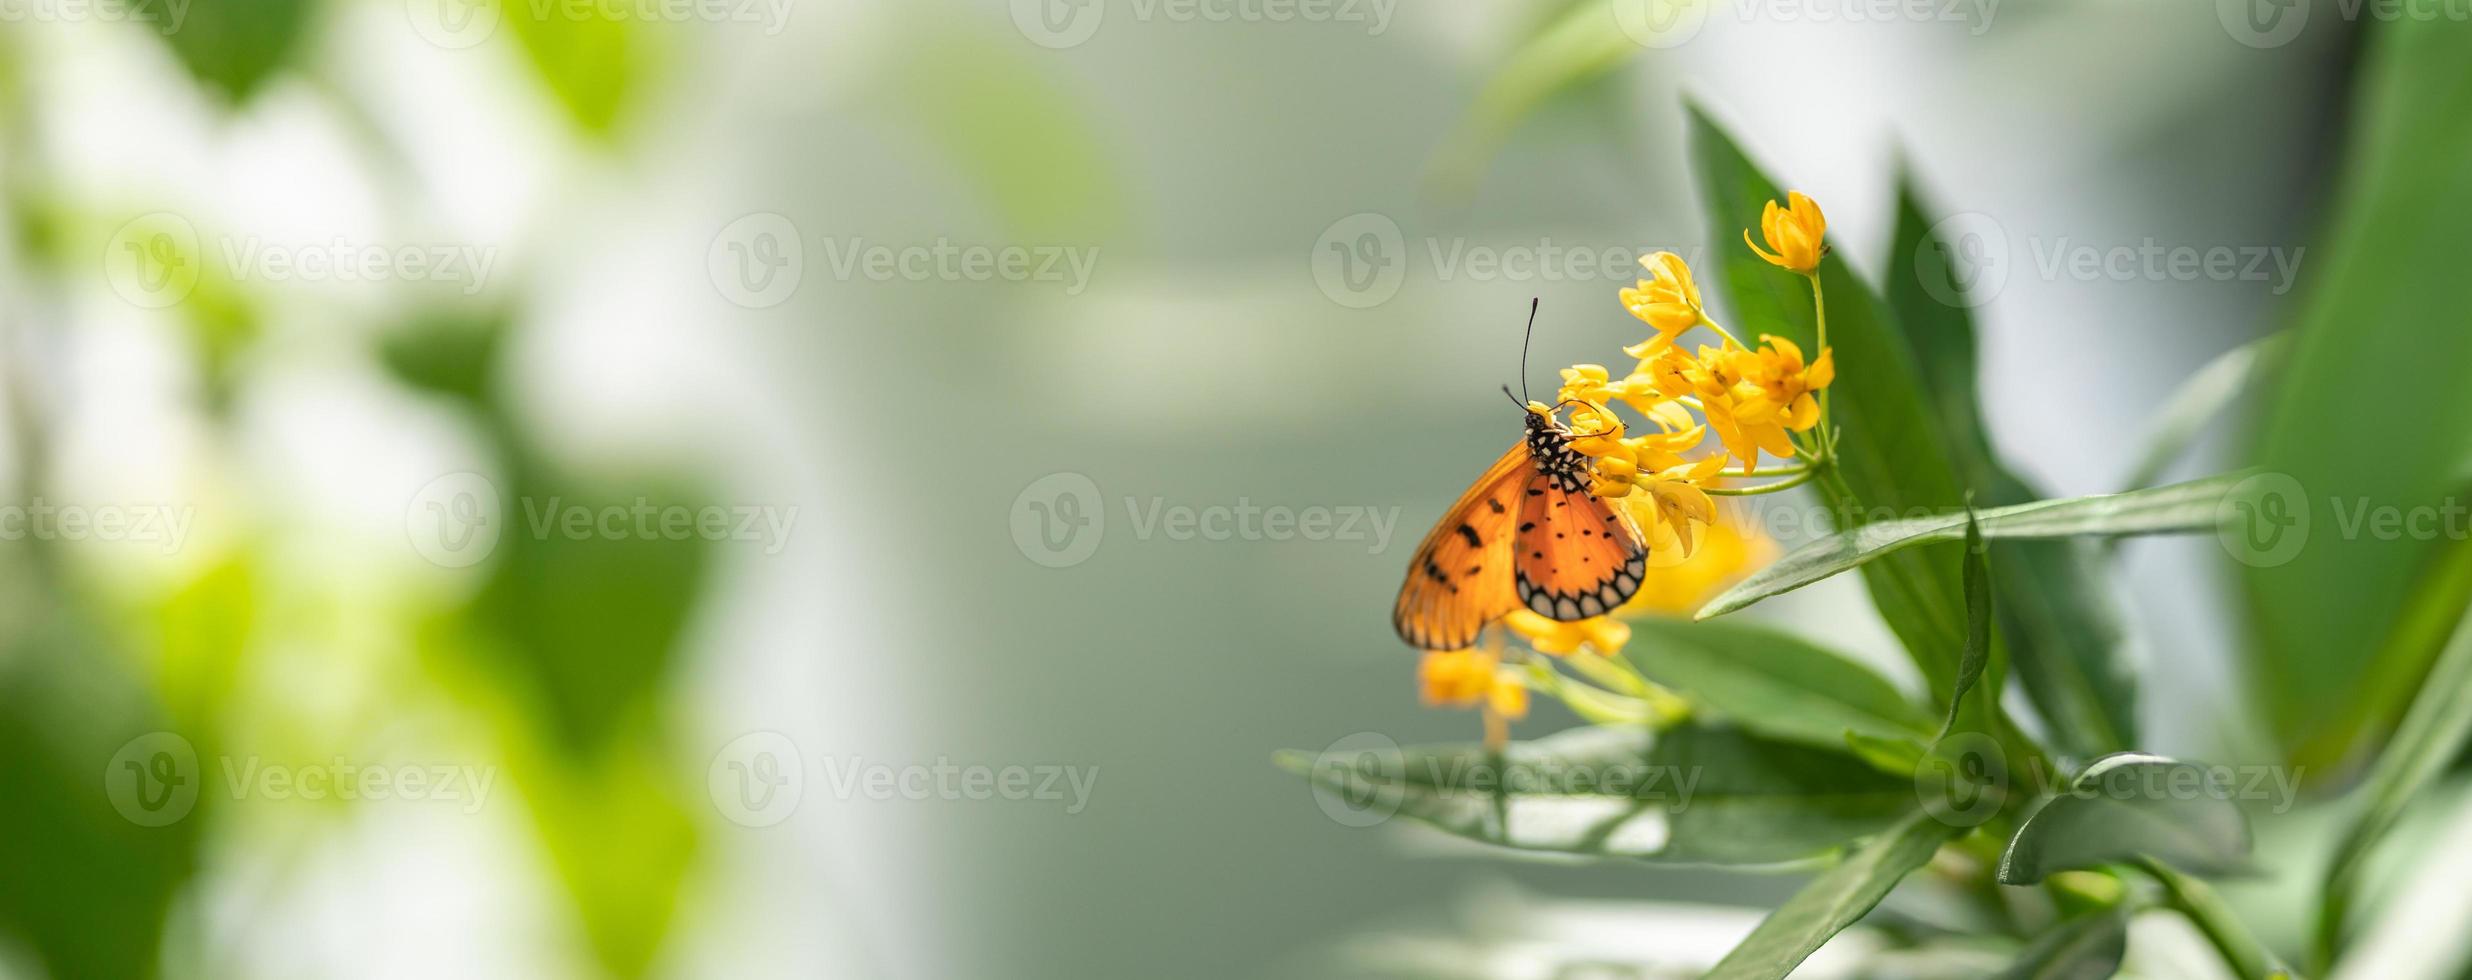 skön orange fjäril på gul blomma med grön blad natur suddig bakgrund i trädgård med kopia Plats använder sig av som bakgrund insekt, naturlig landskap, ekologi, färsk omslag sida begrepp. foto